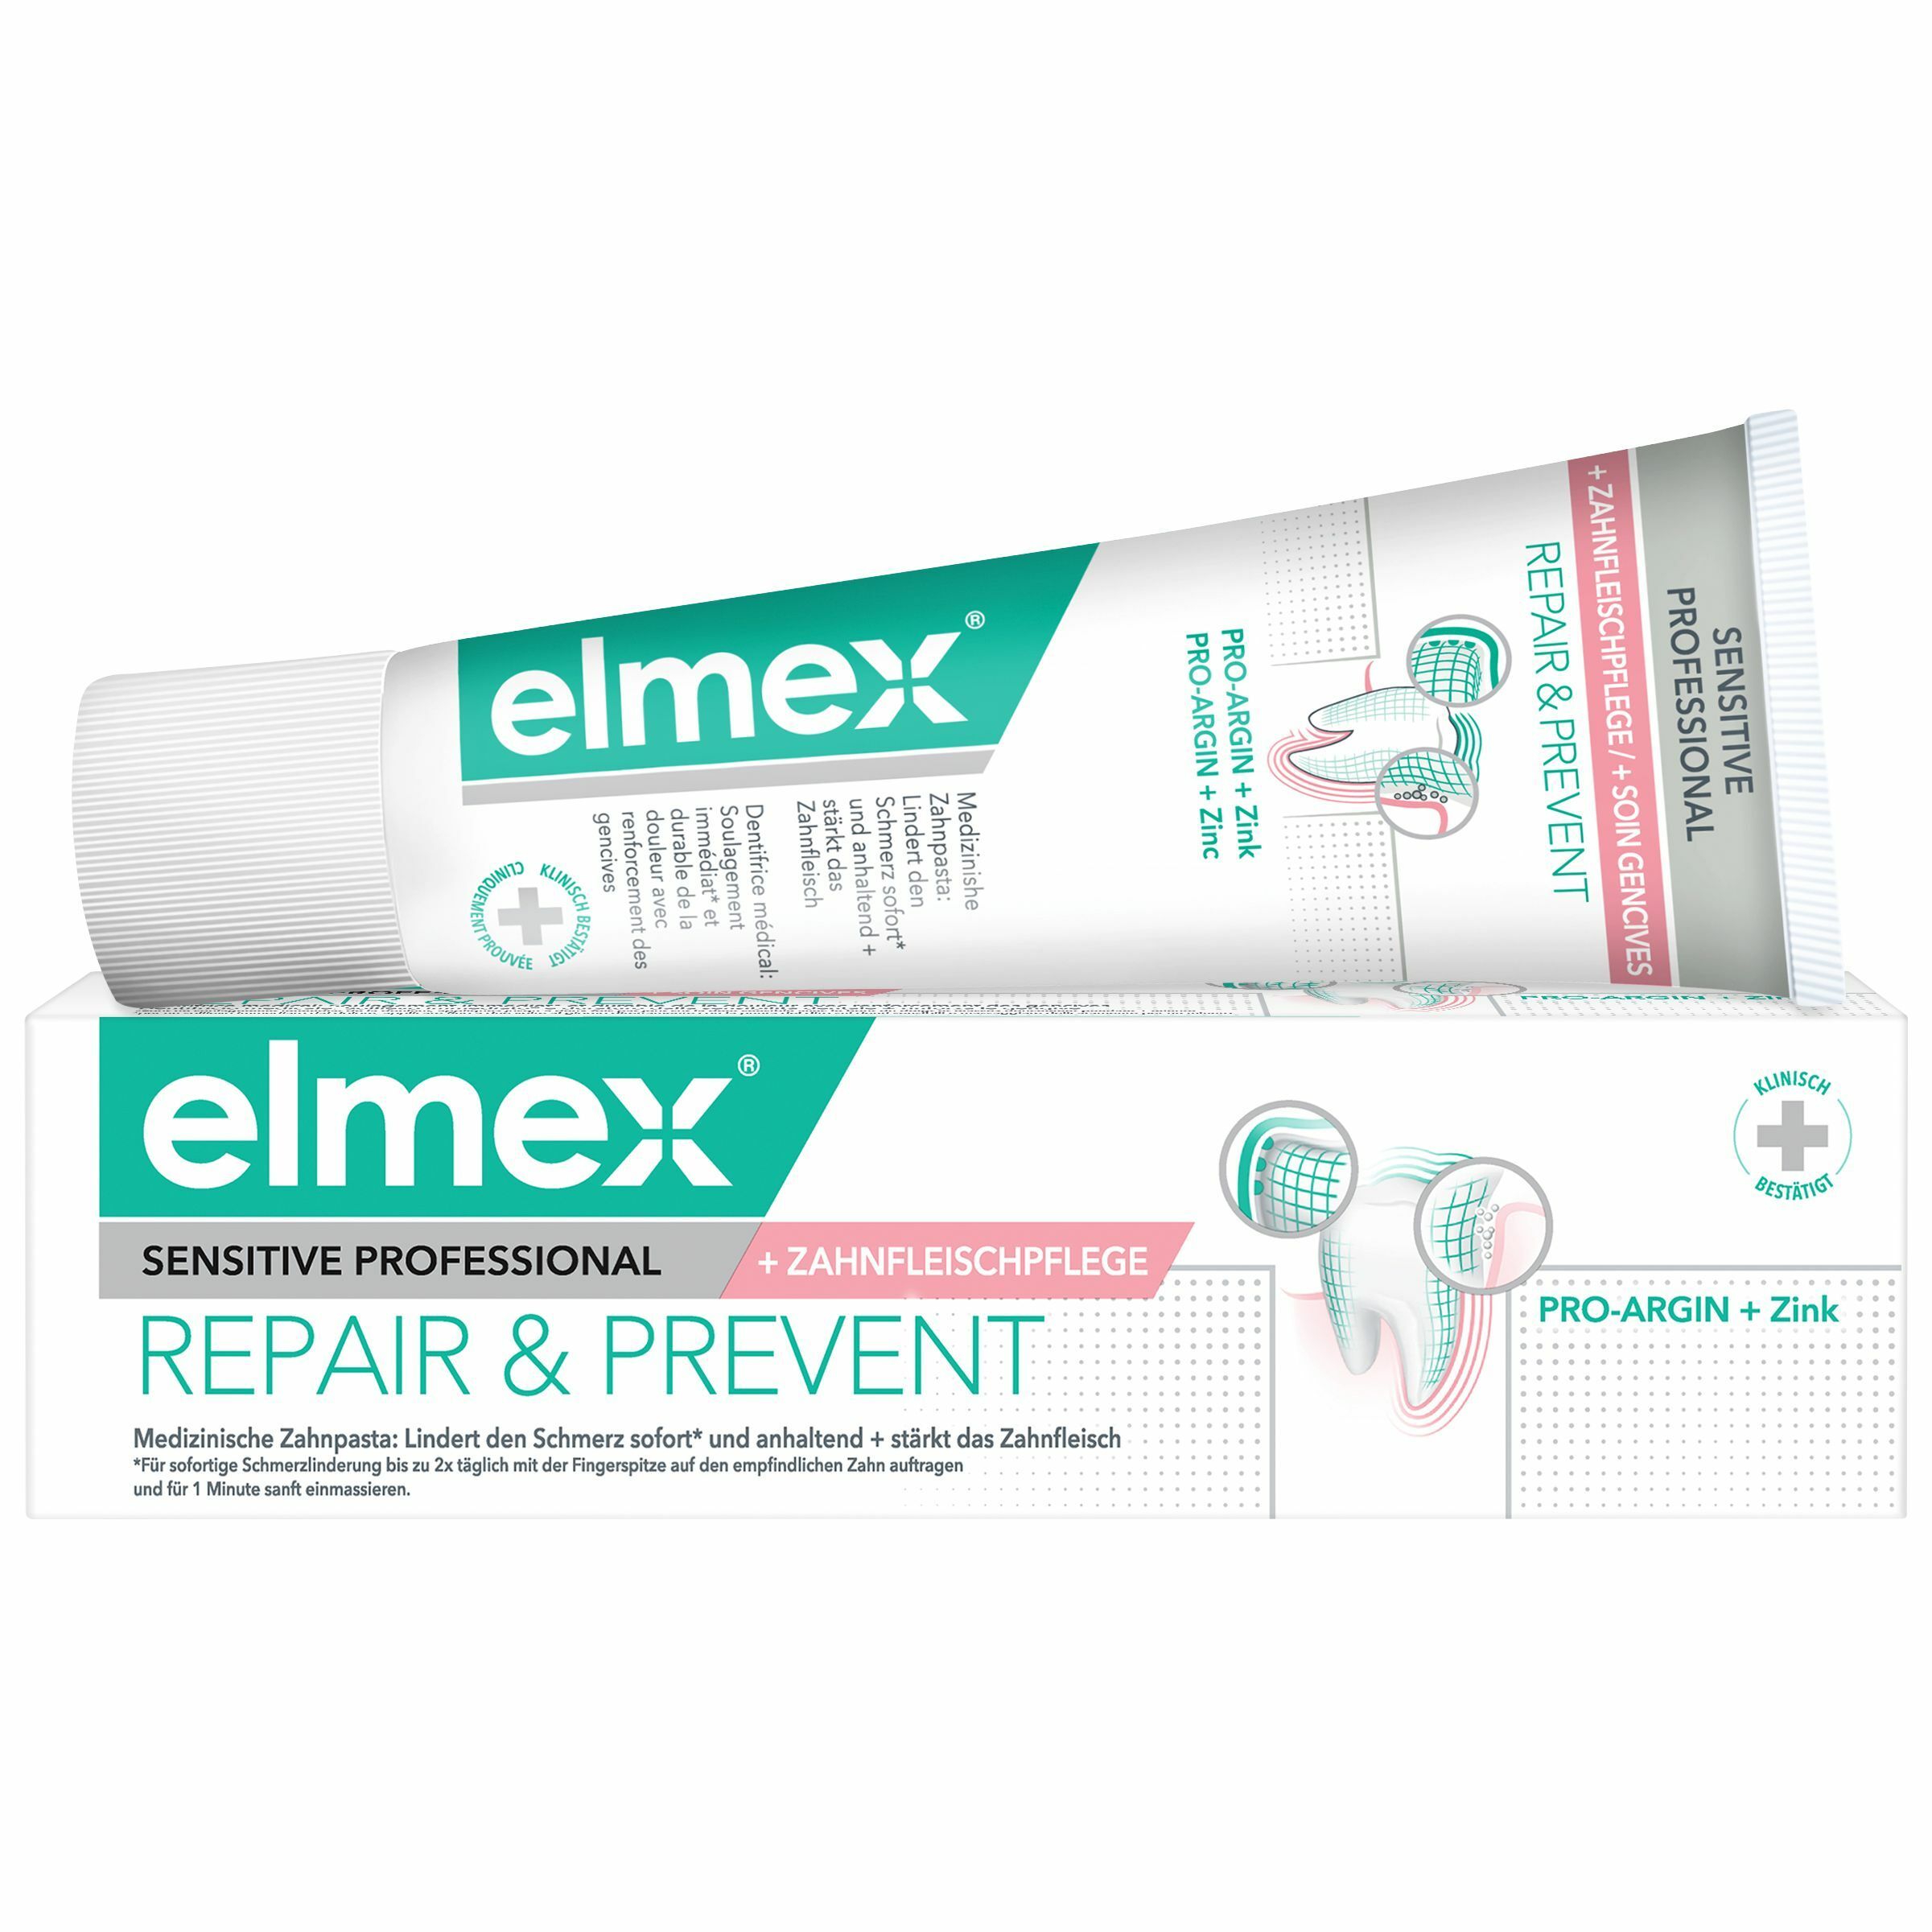 Image of elmex SENSITIVE PROFESSIONAL Repair & Prevent Zahnpasta